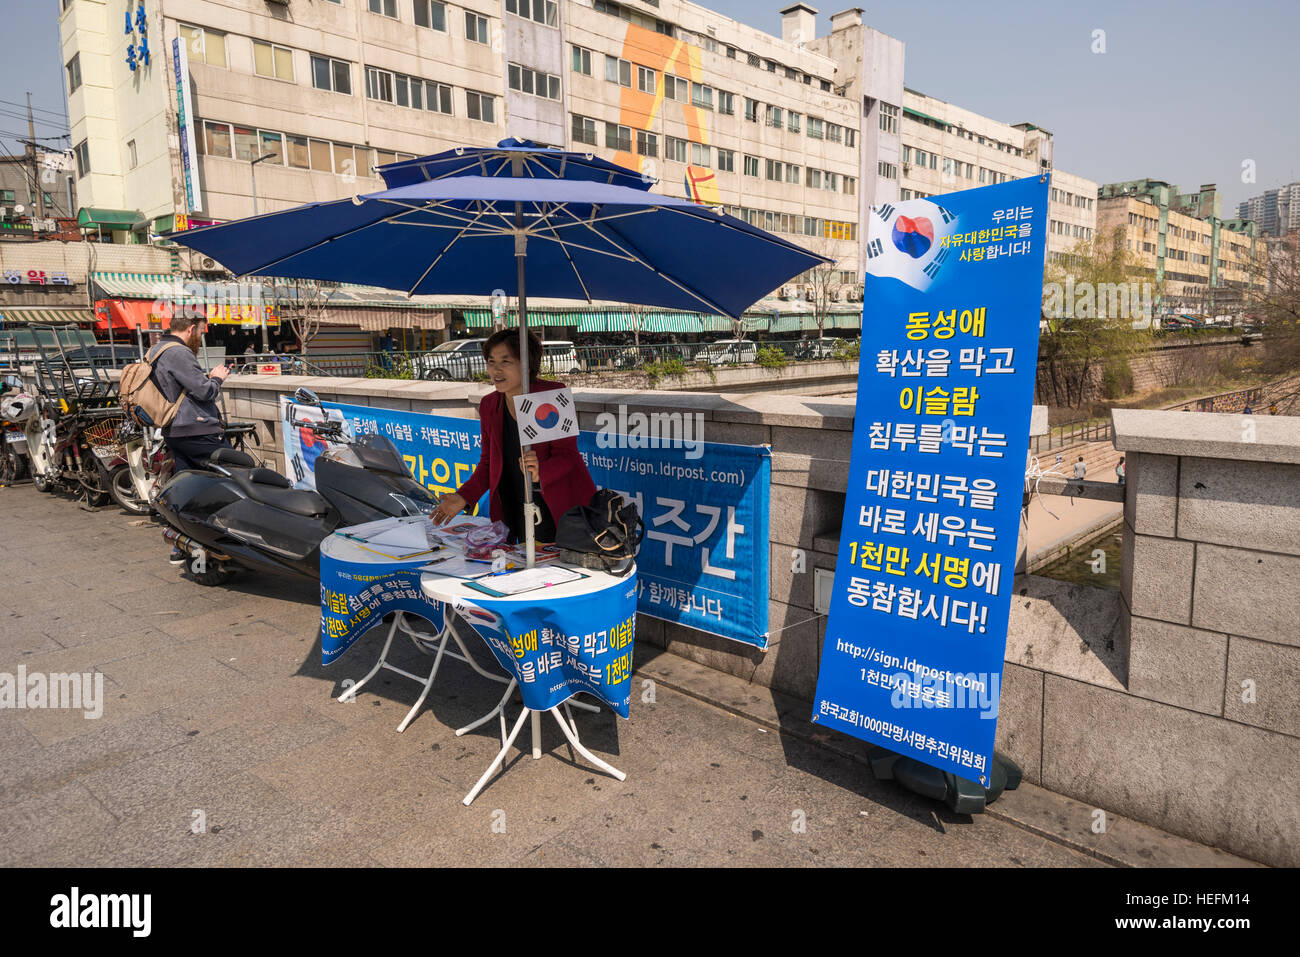 Campainger rue demandant de signer une pétition contre la propagation de l'Islam et les gays dans les rues de Séoul, Corée Banque D'Images